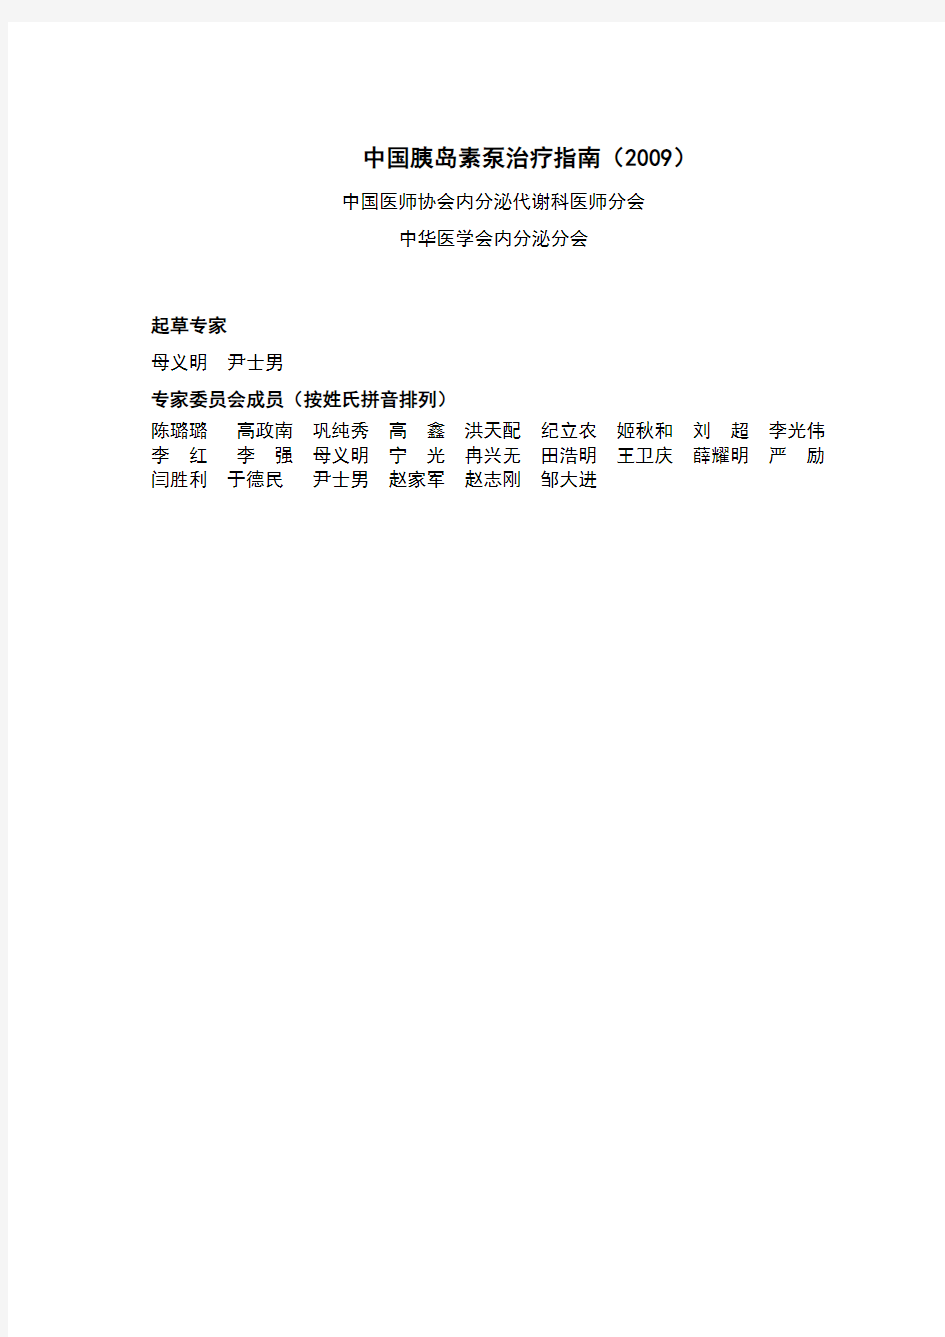 中国胰岛素泵治疗指南(2009)